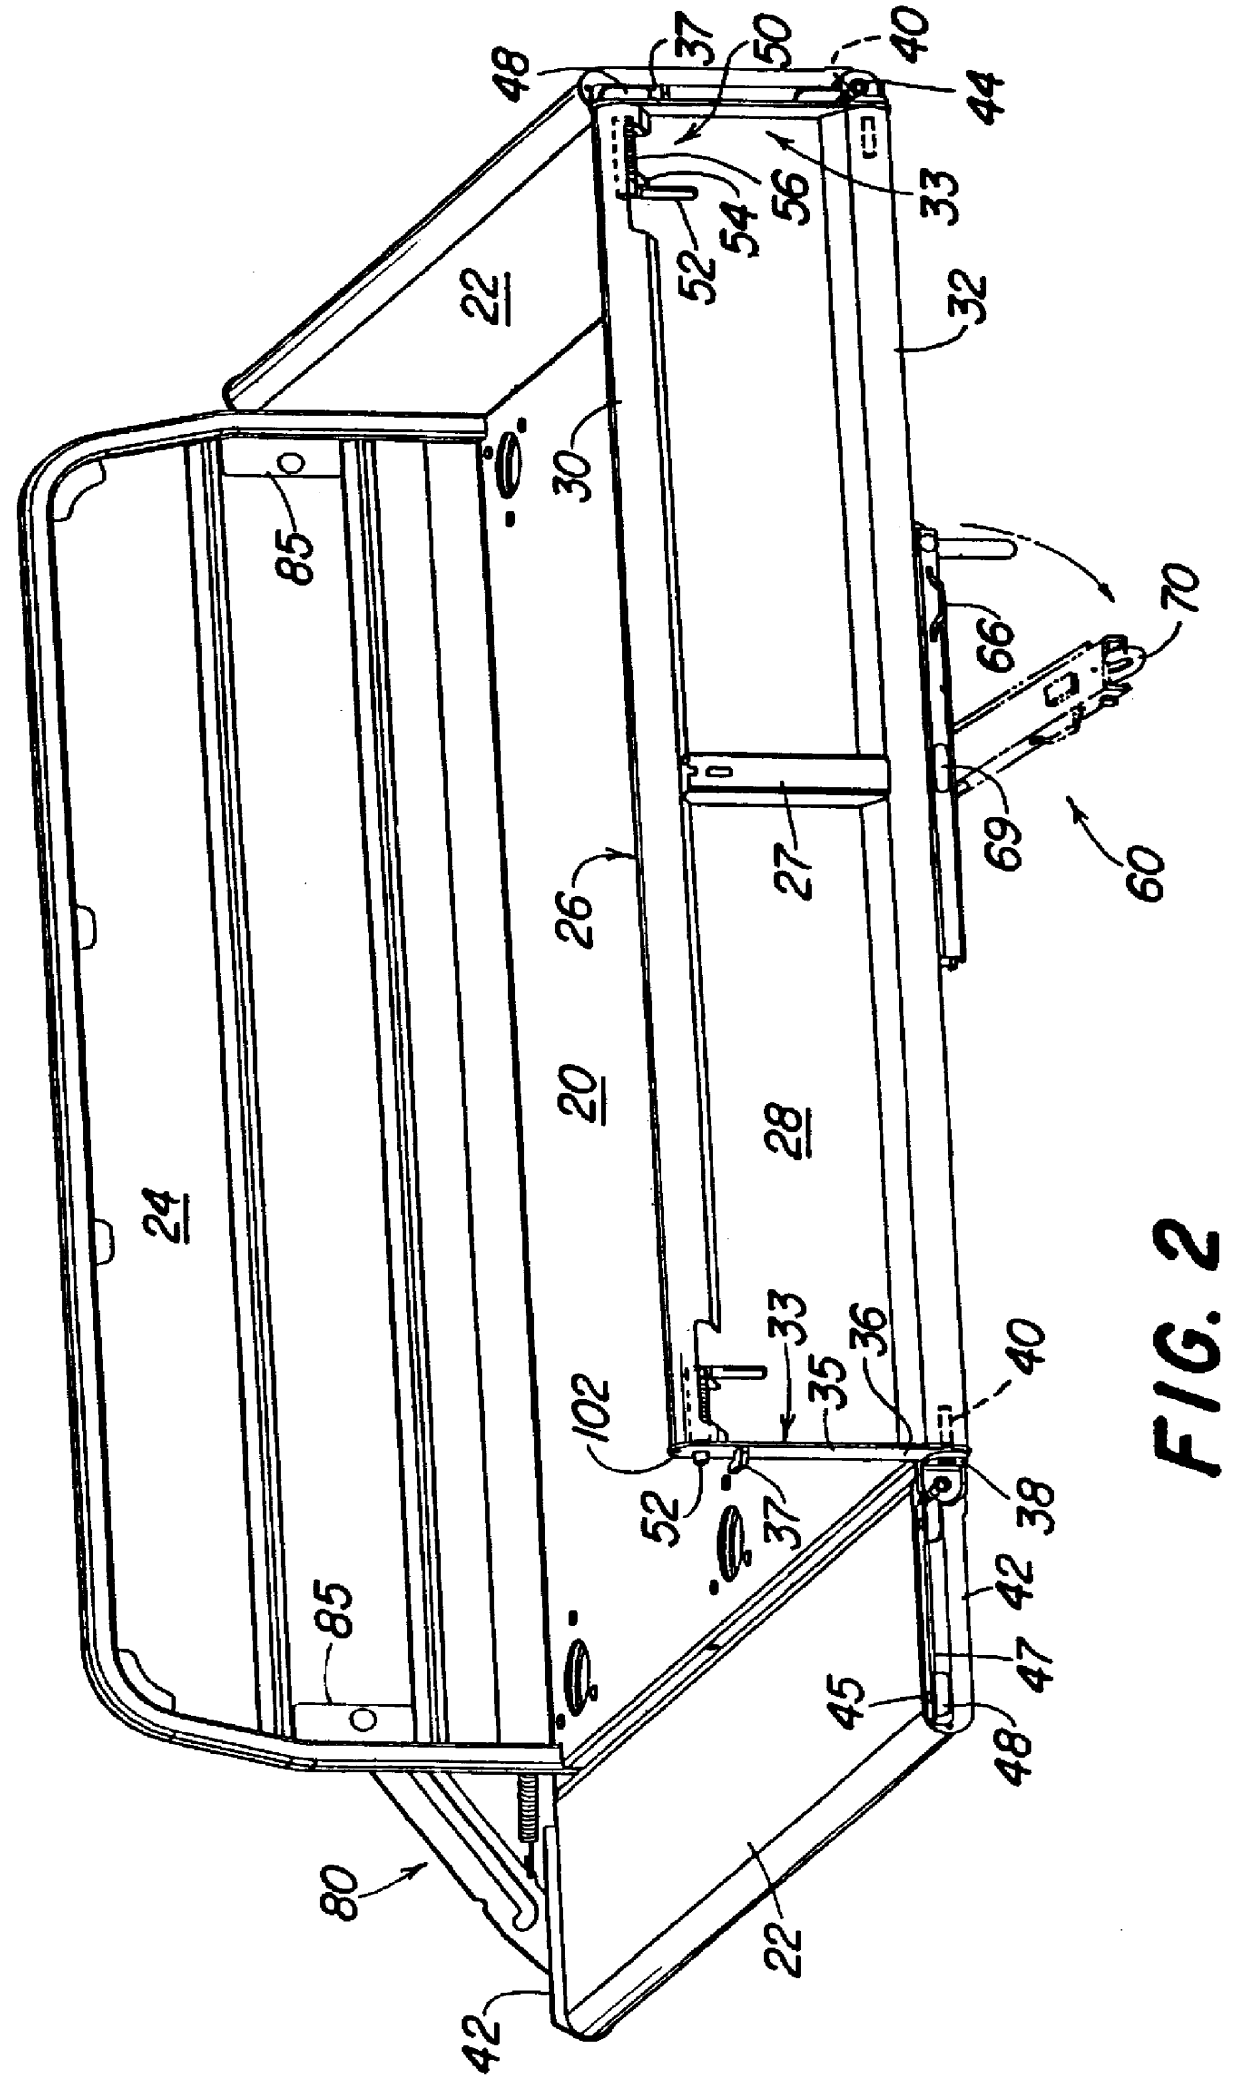 Cargo box sidewall latch